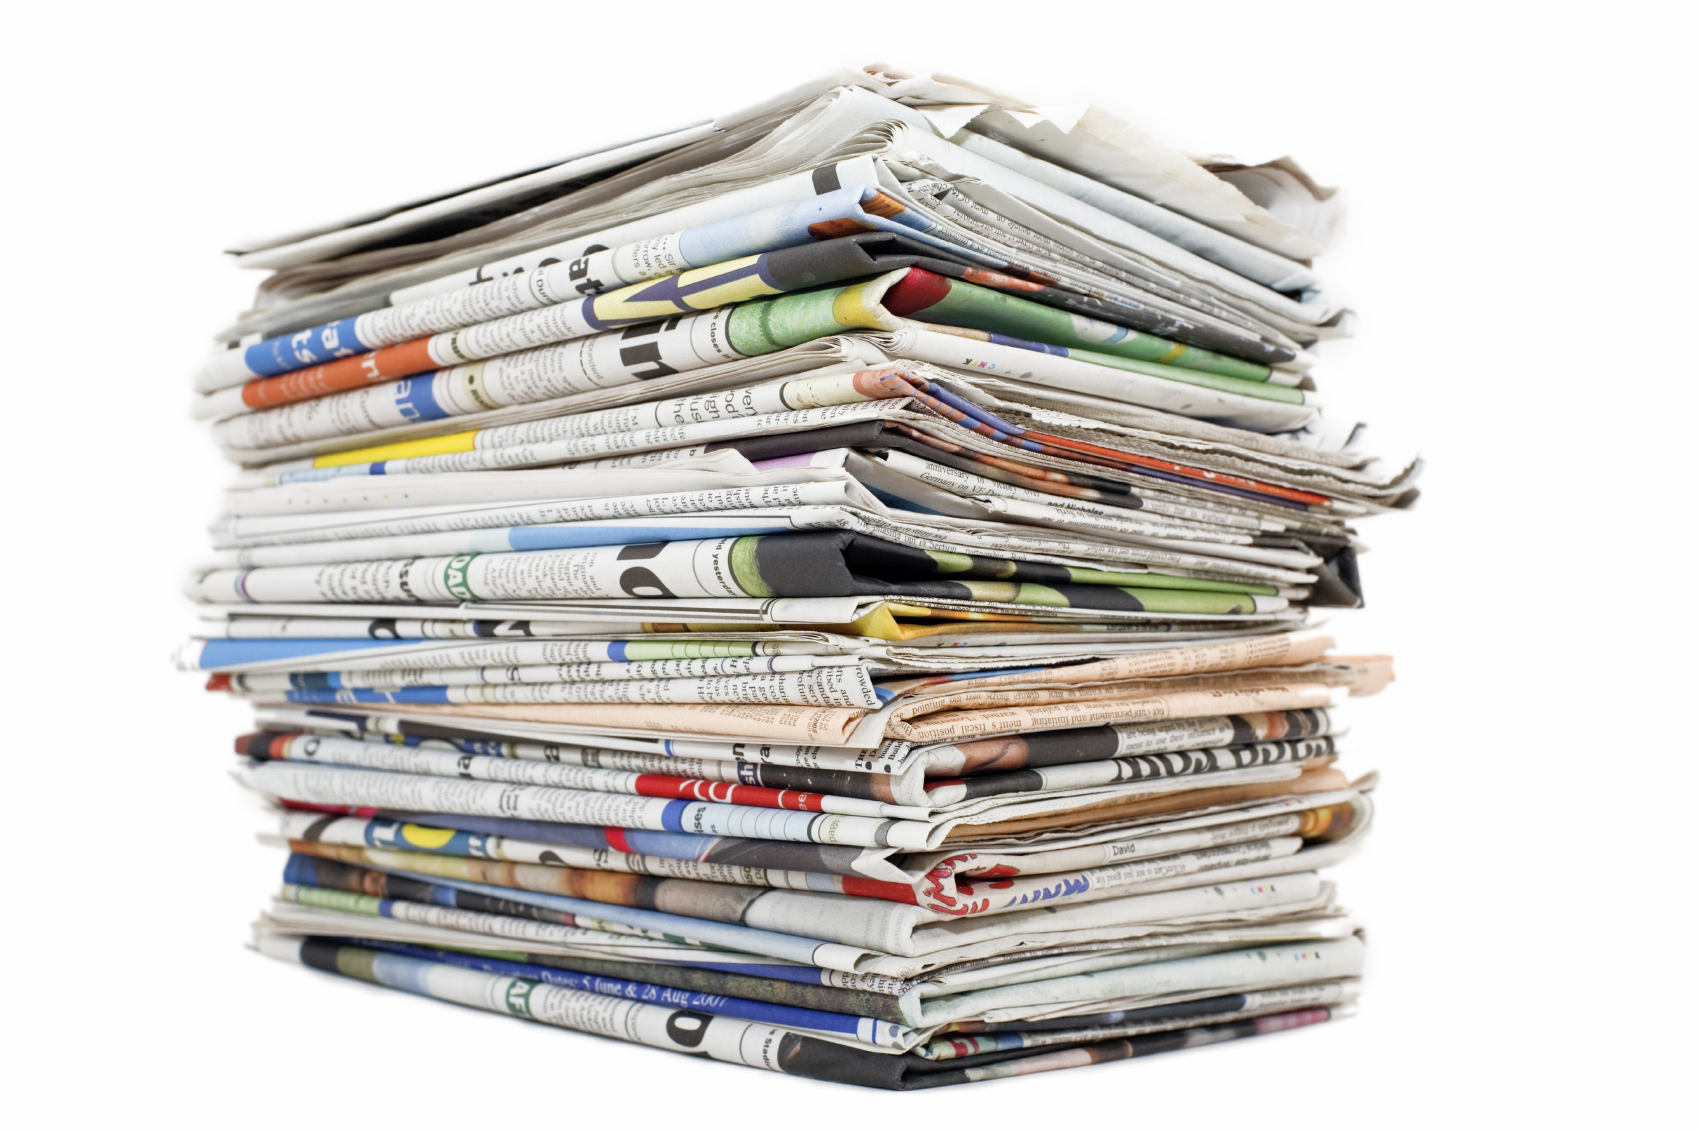 Τα πρωτοσέλιδα εφημερίδων πανελλήνιας κυκλοφορίας την Δευτέρα 4 Απριλίου